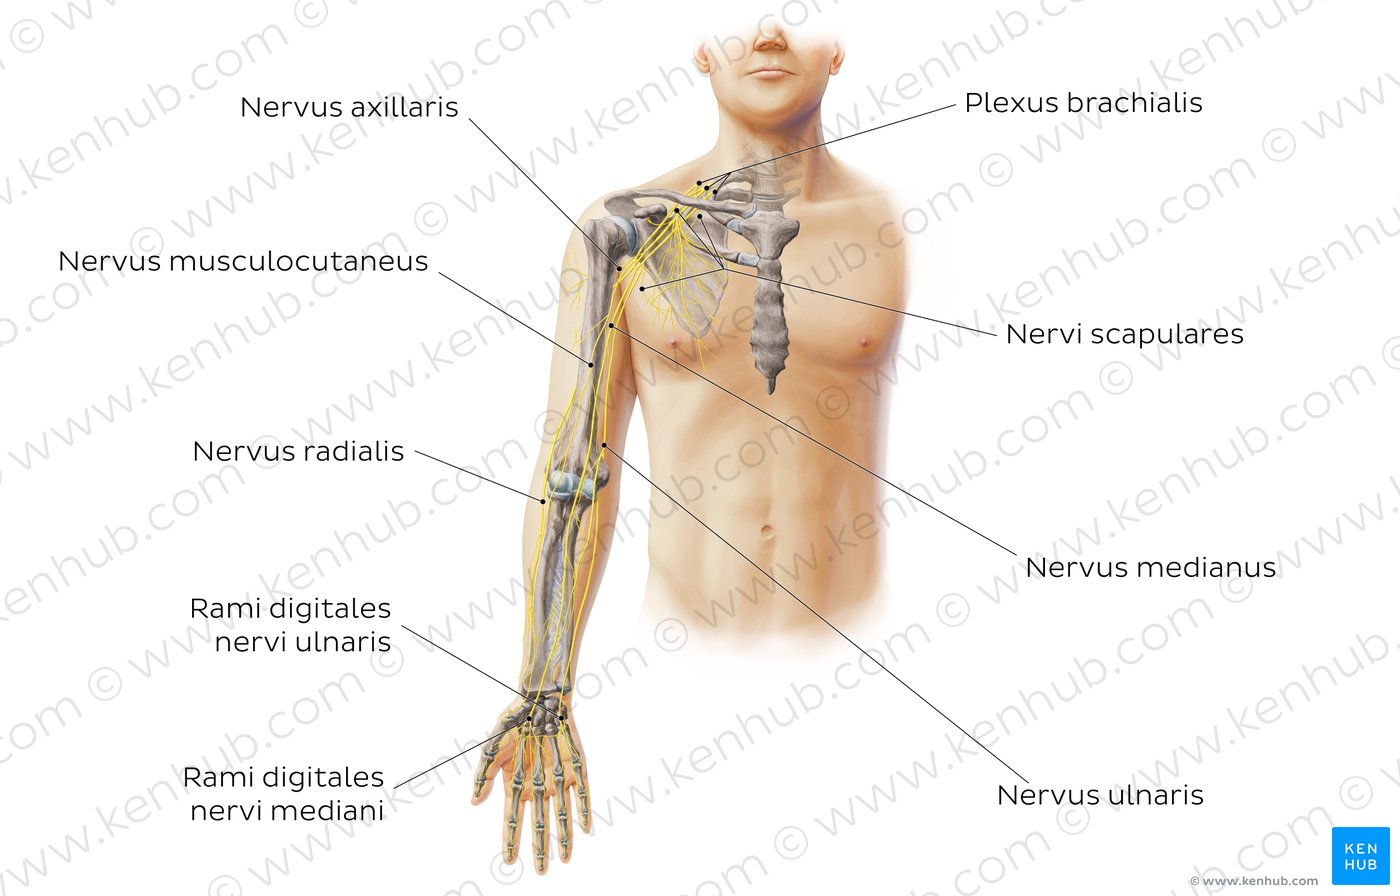 Nervus musculocutaneus   Anatomie, Verlauf und Funktion   Kenhub